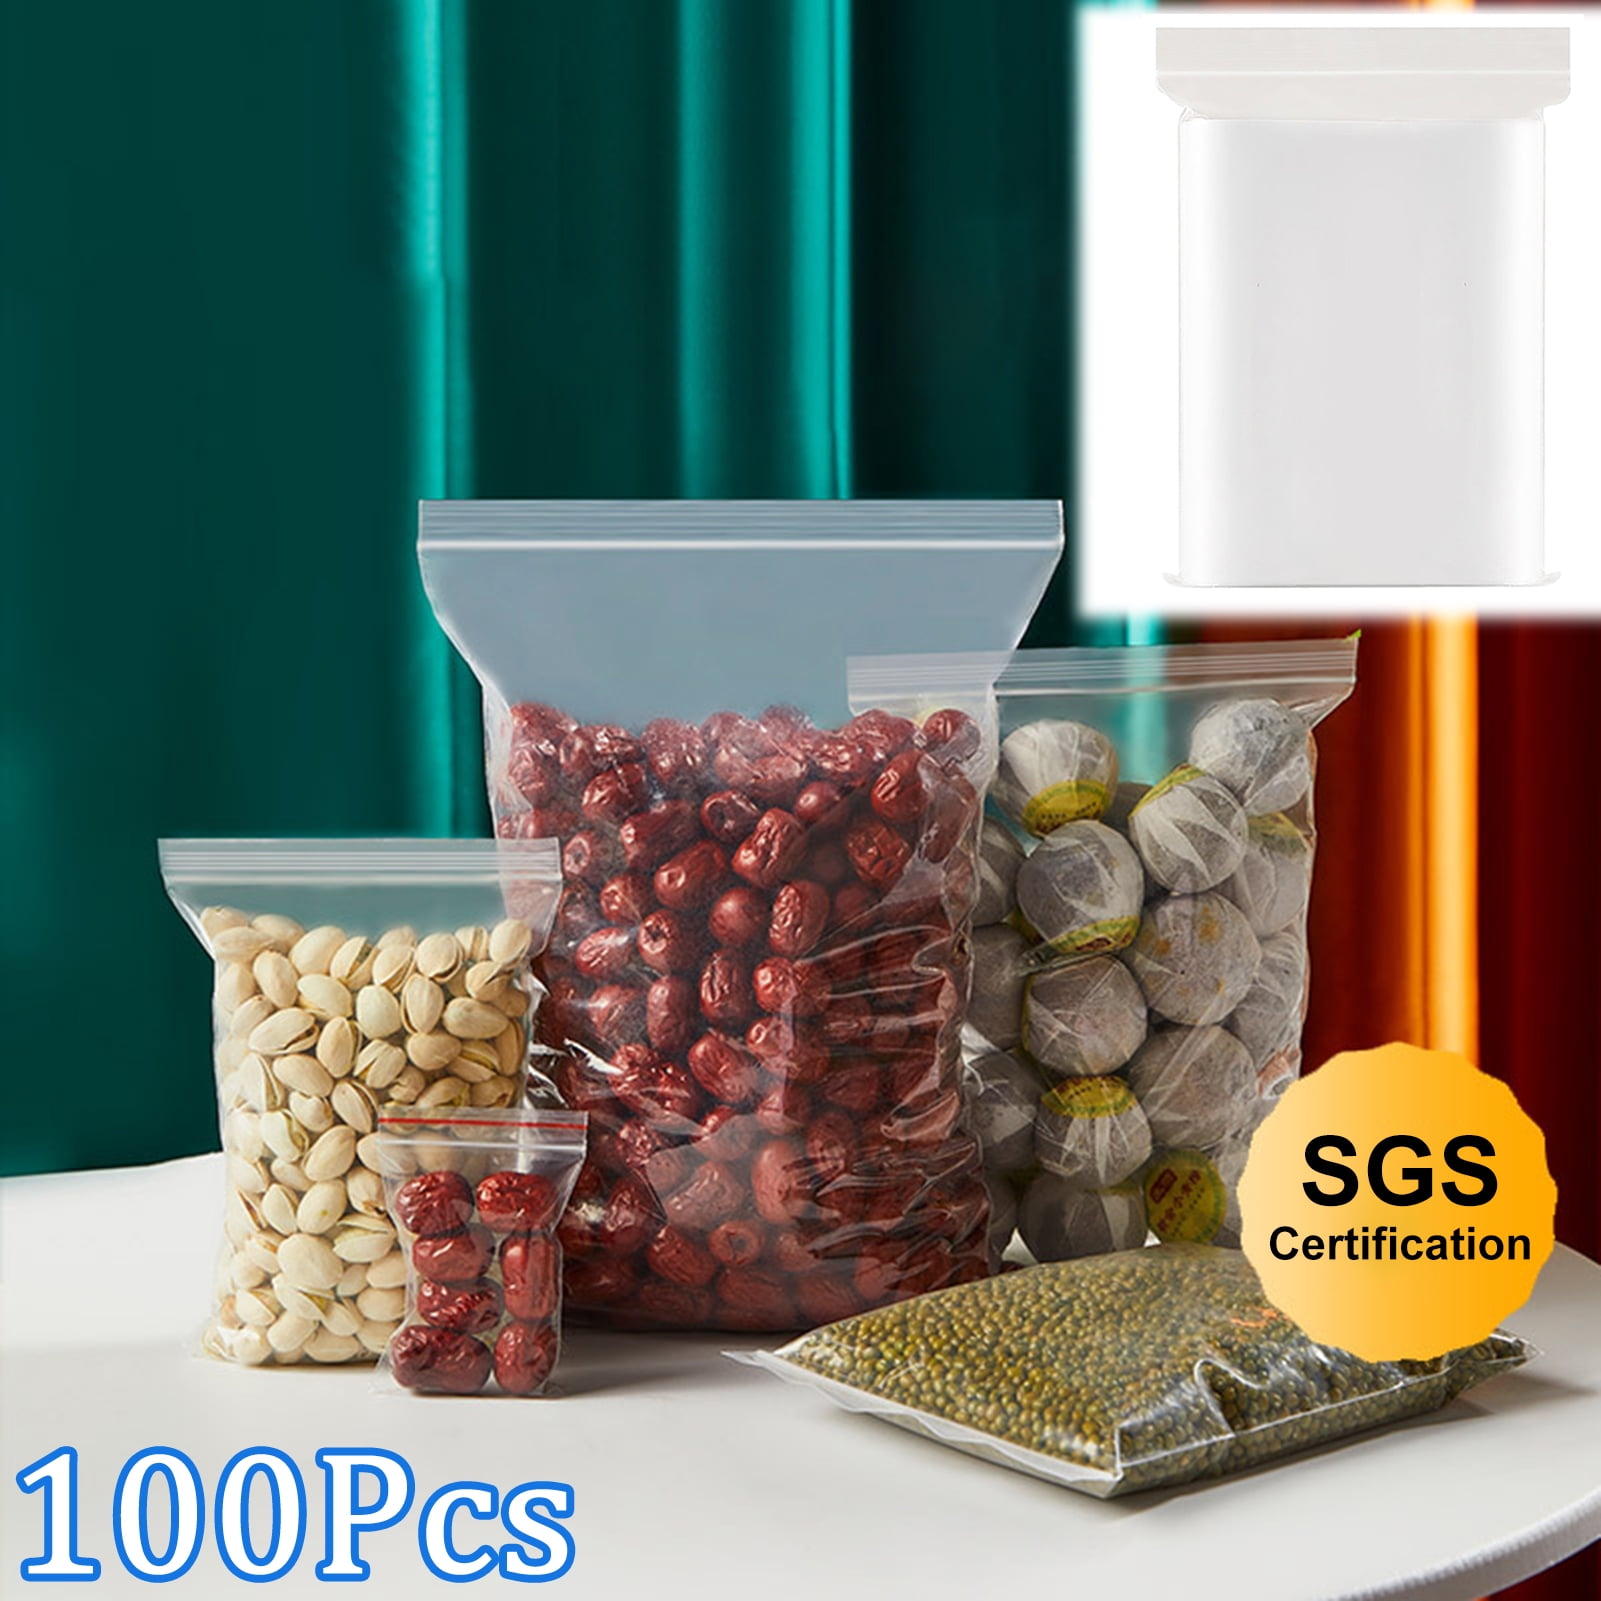 Details about   100pcs Holographic Foil Pouches Food Storage Zipper Bag Smell Proof Bags U4X8 